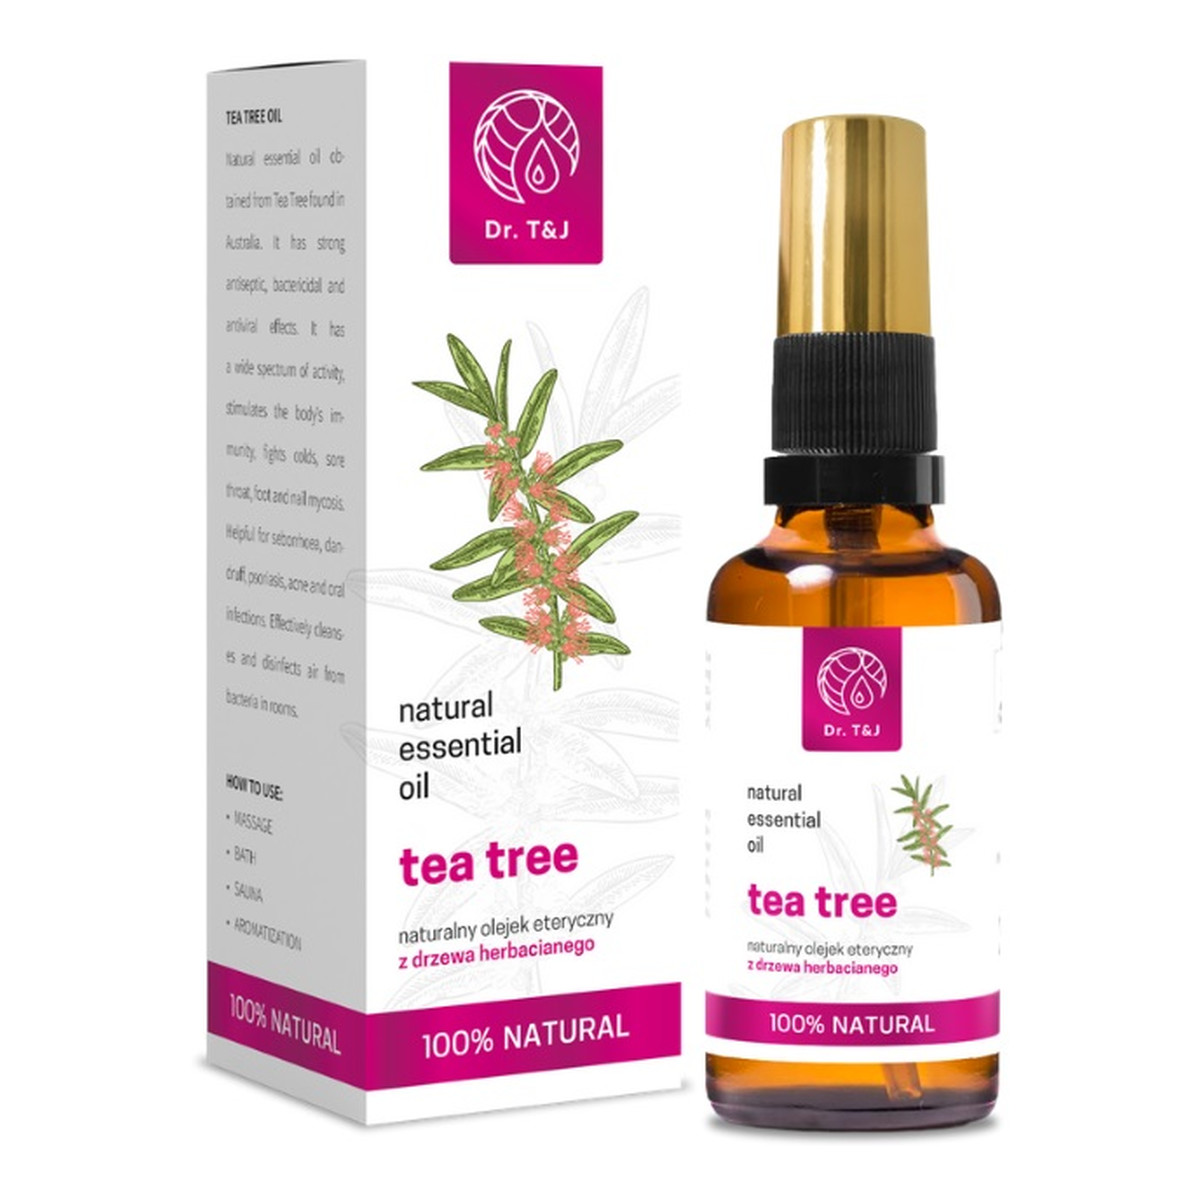 Dr. T&J Natural Tea Tree Essential Oil naturalny olej eteryczny z drzewa herbacianego 50ml